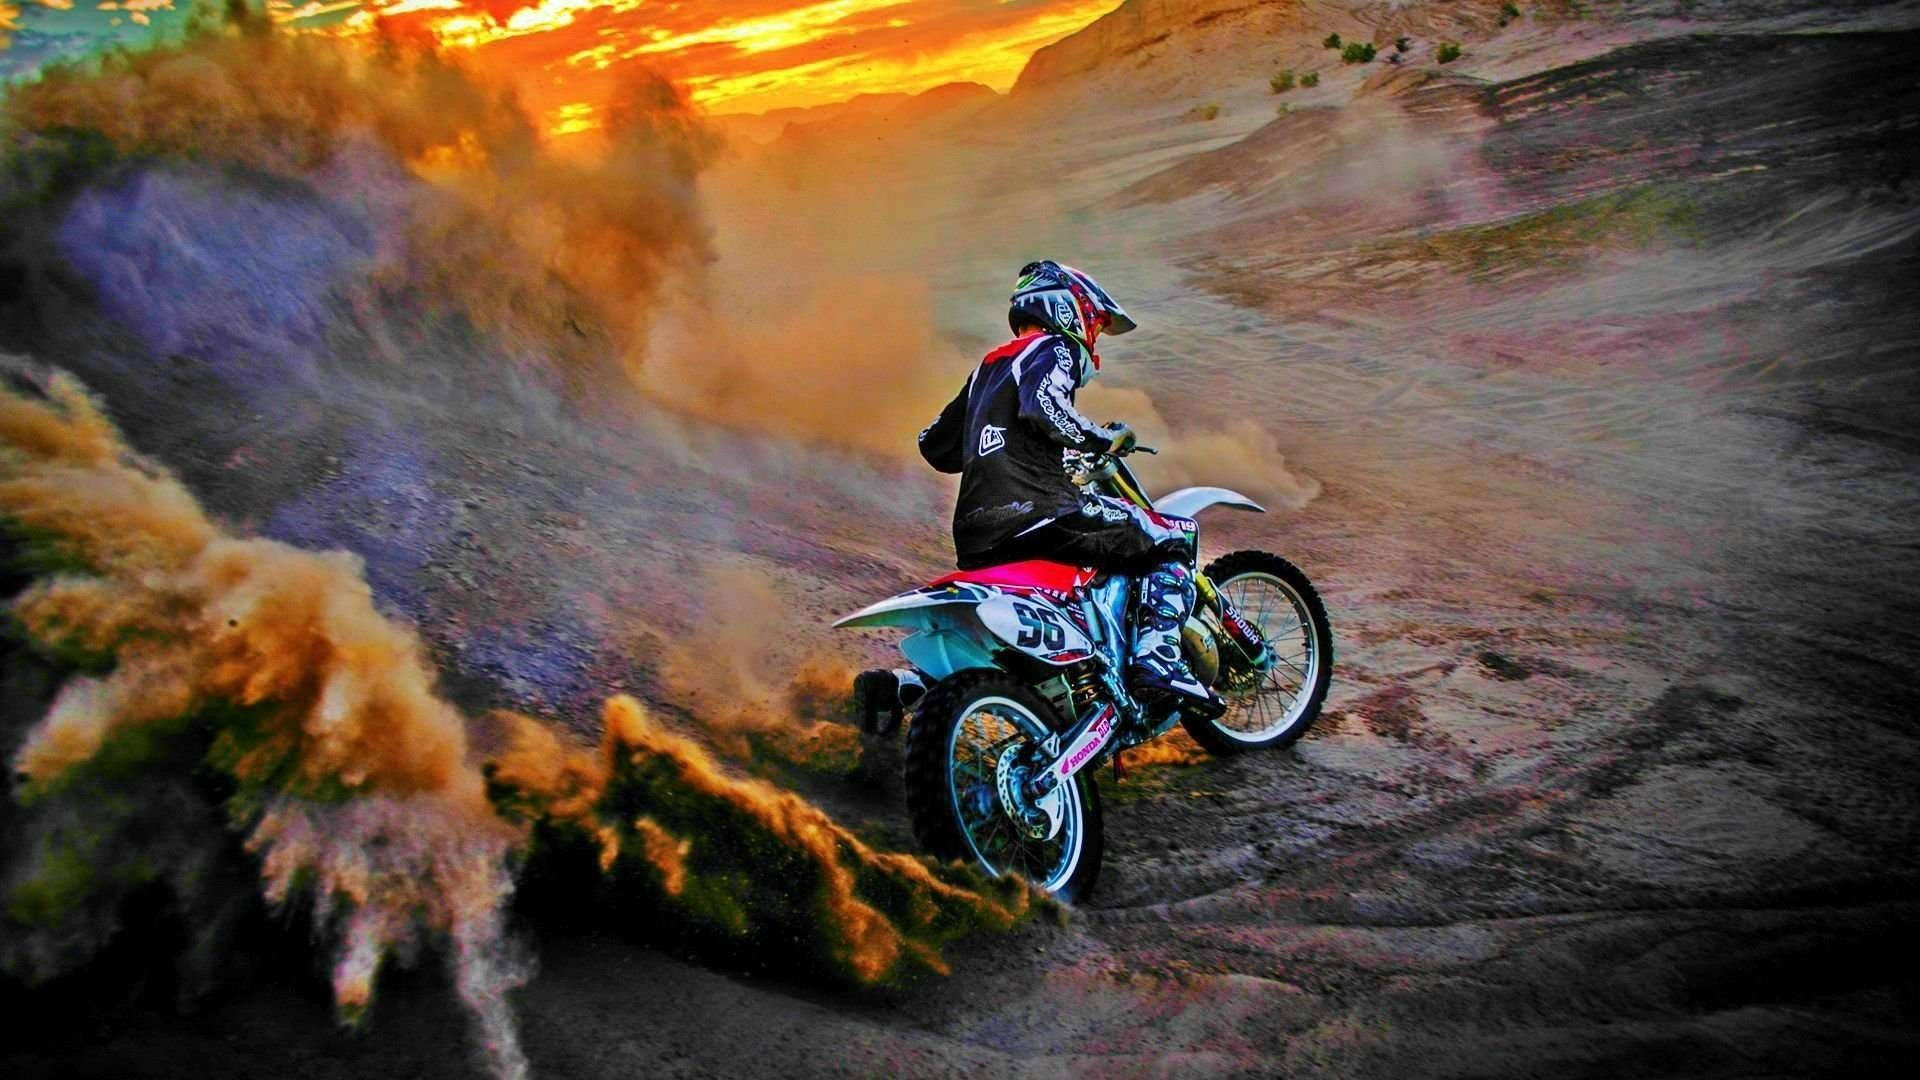 Eineperson, Die Auf Einem Motocross-motorrad Fährt. Wallpaper